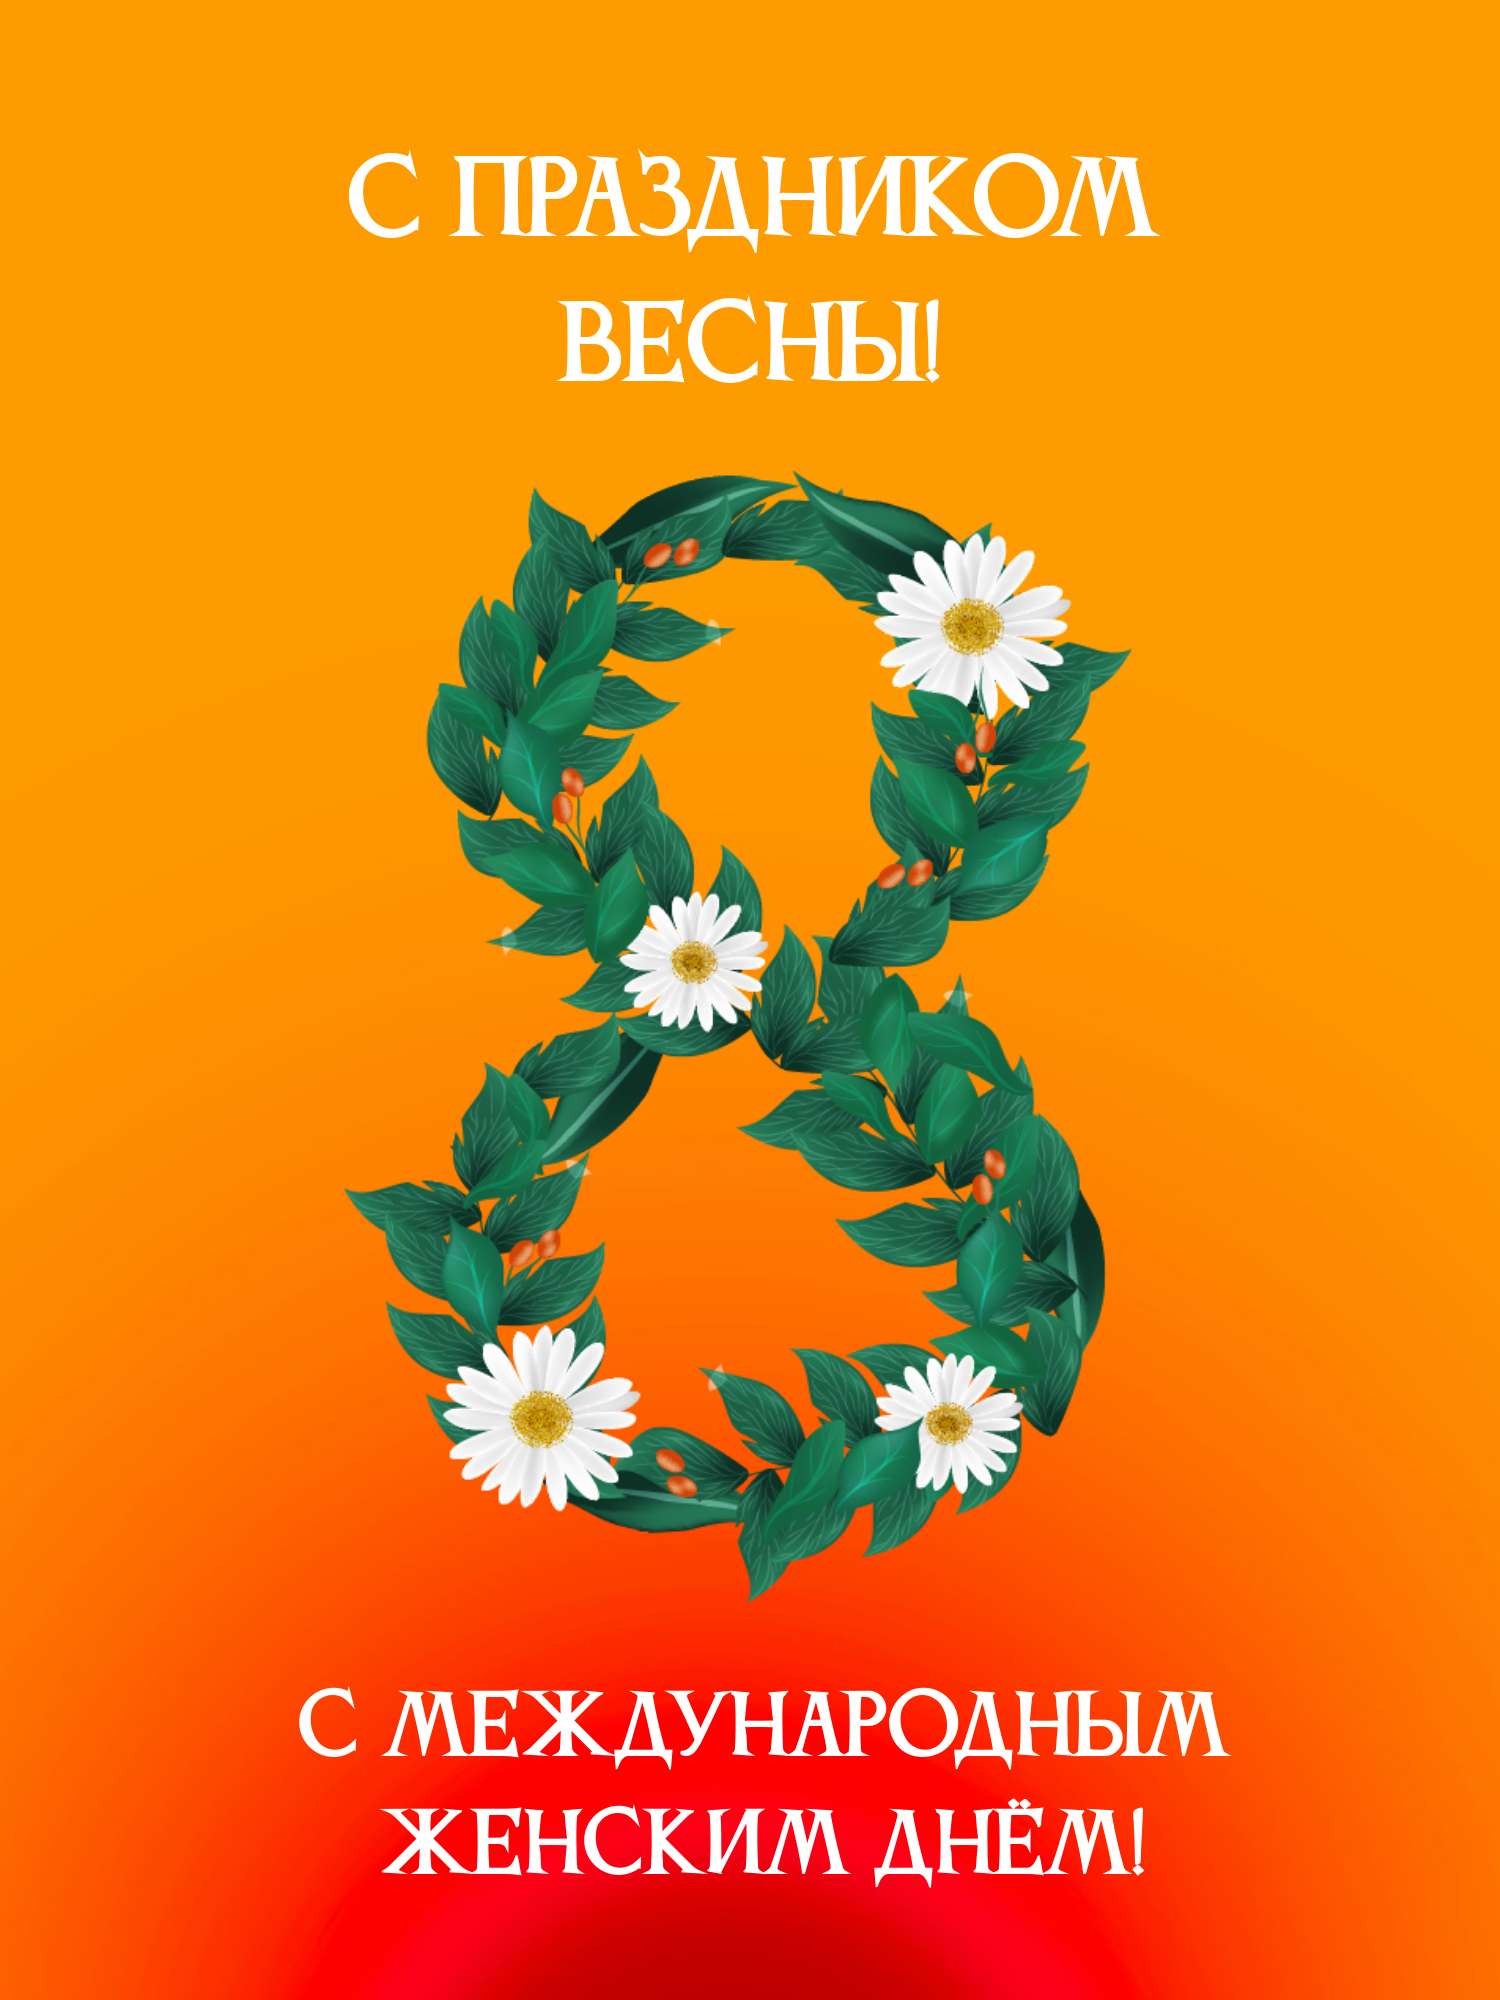 Красно-оранжевая открытка в международный женский день 8 марта с цифрой из зеленых листьев и ромашек